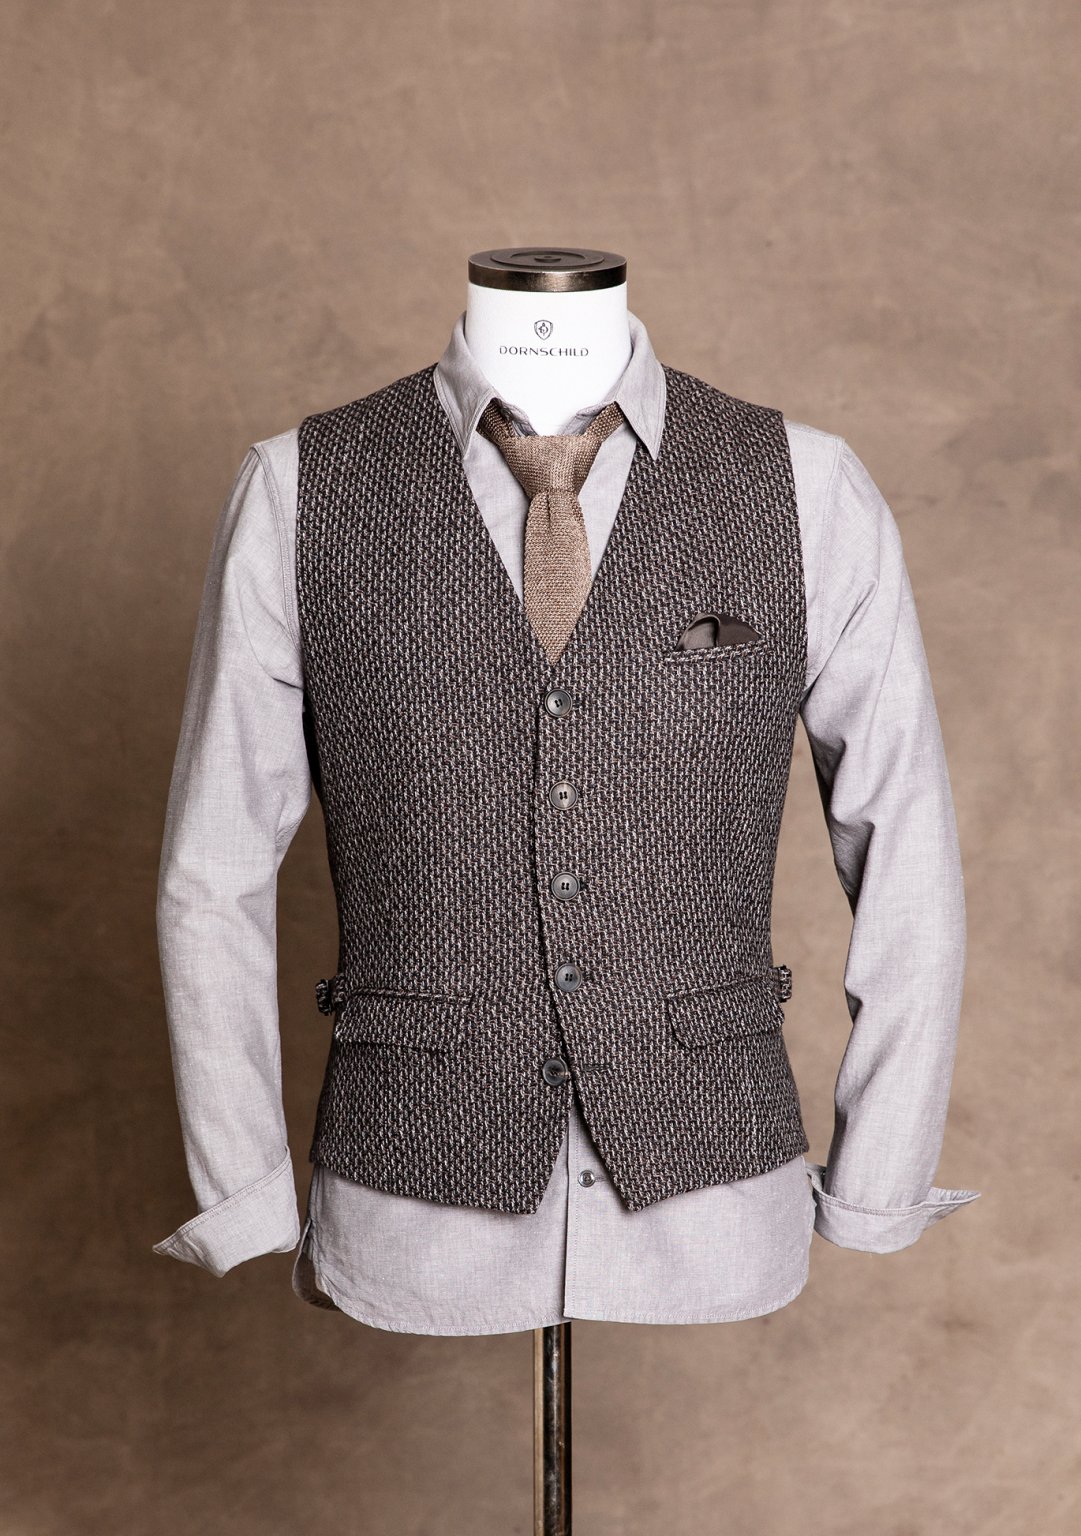 Dornschild - Unique premium men's vests